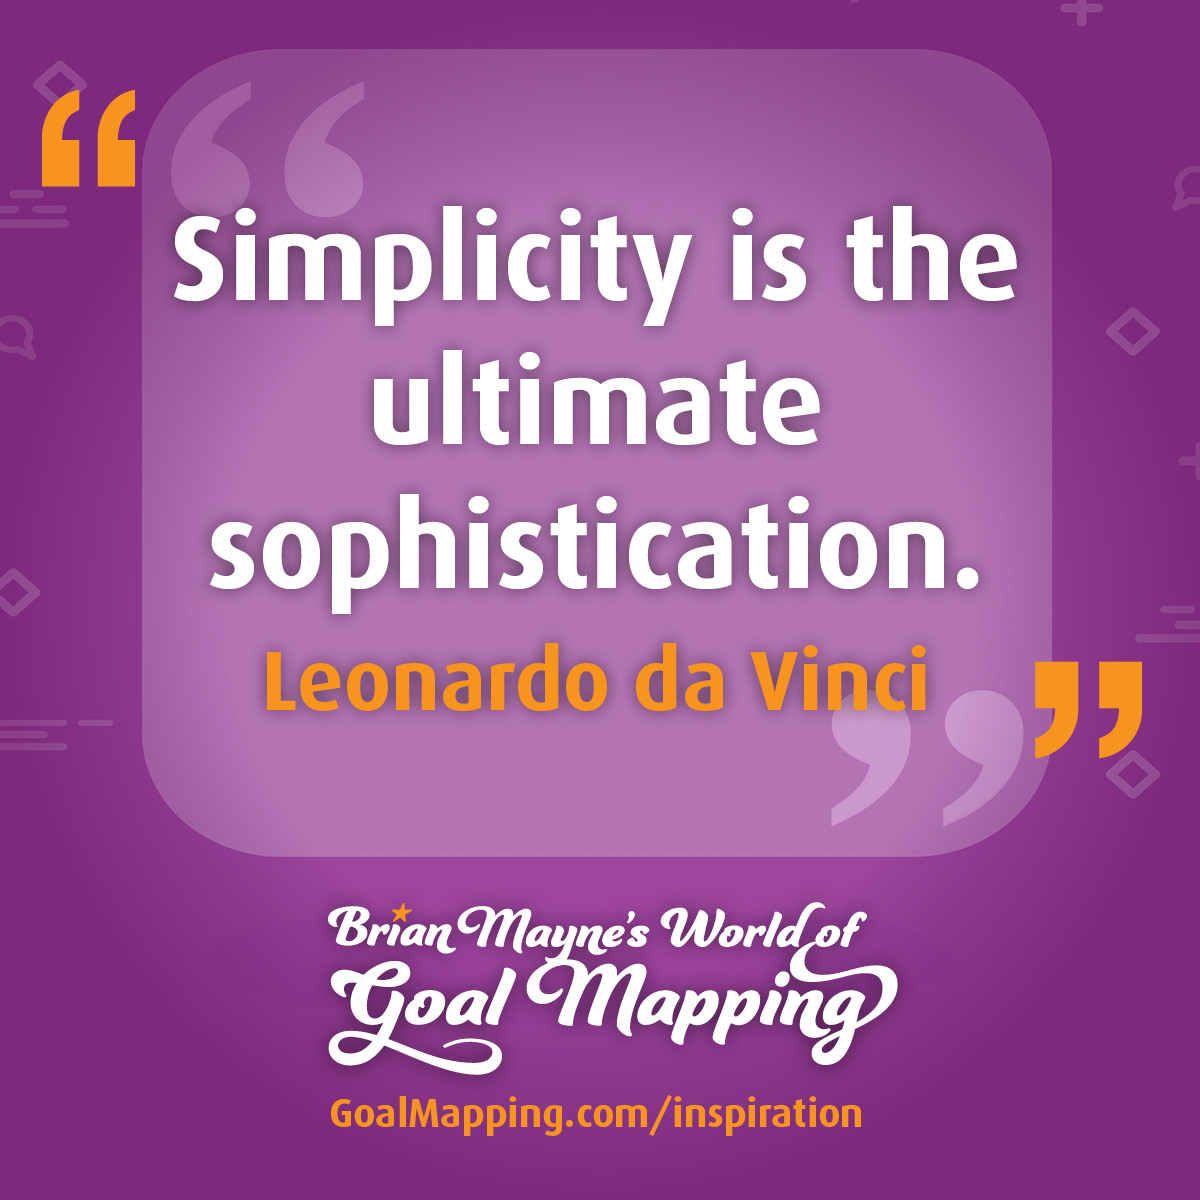 "Simplicity is the ultimate sophistication." Leonardo da Vinci